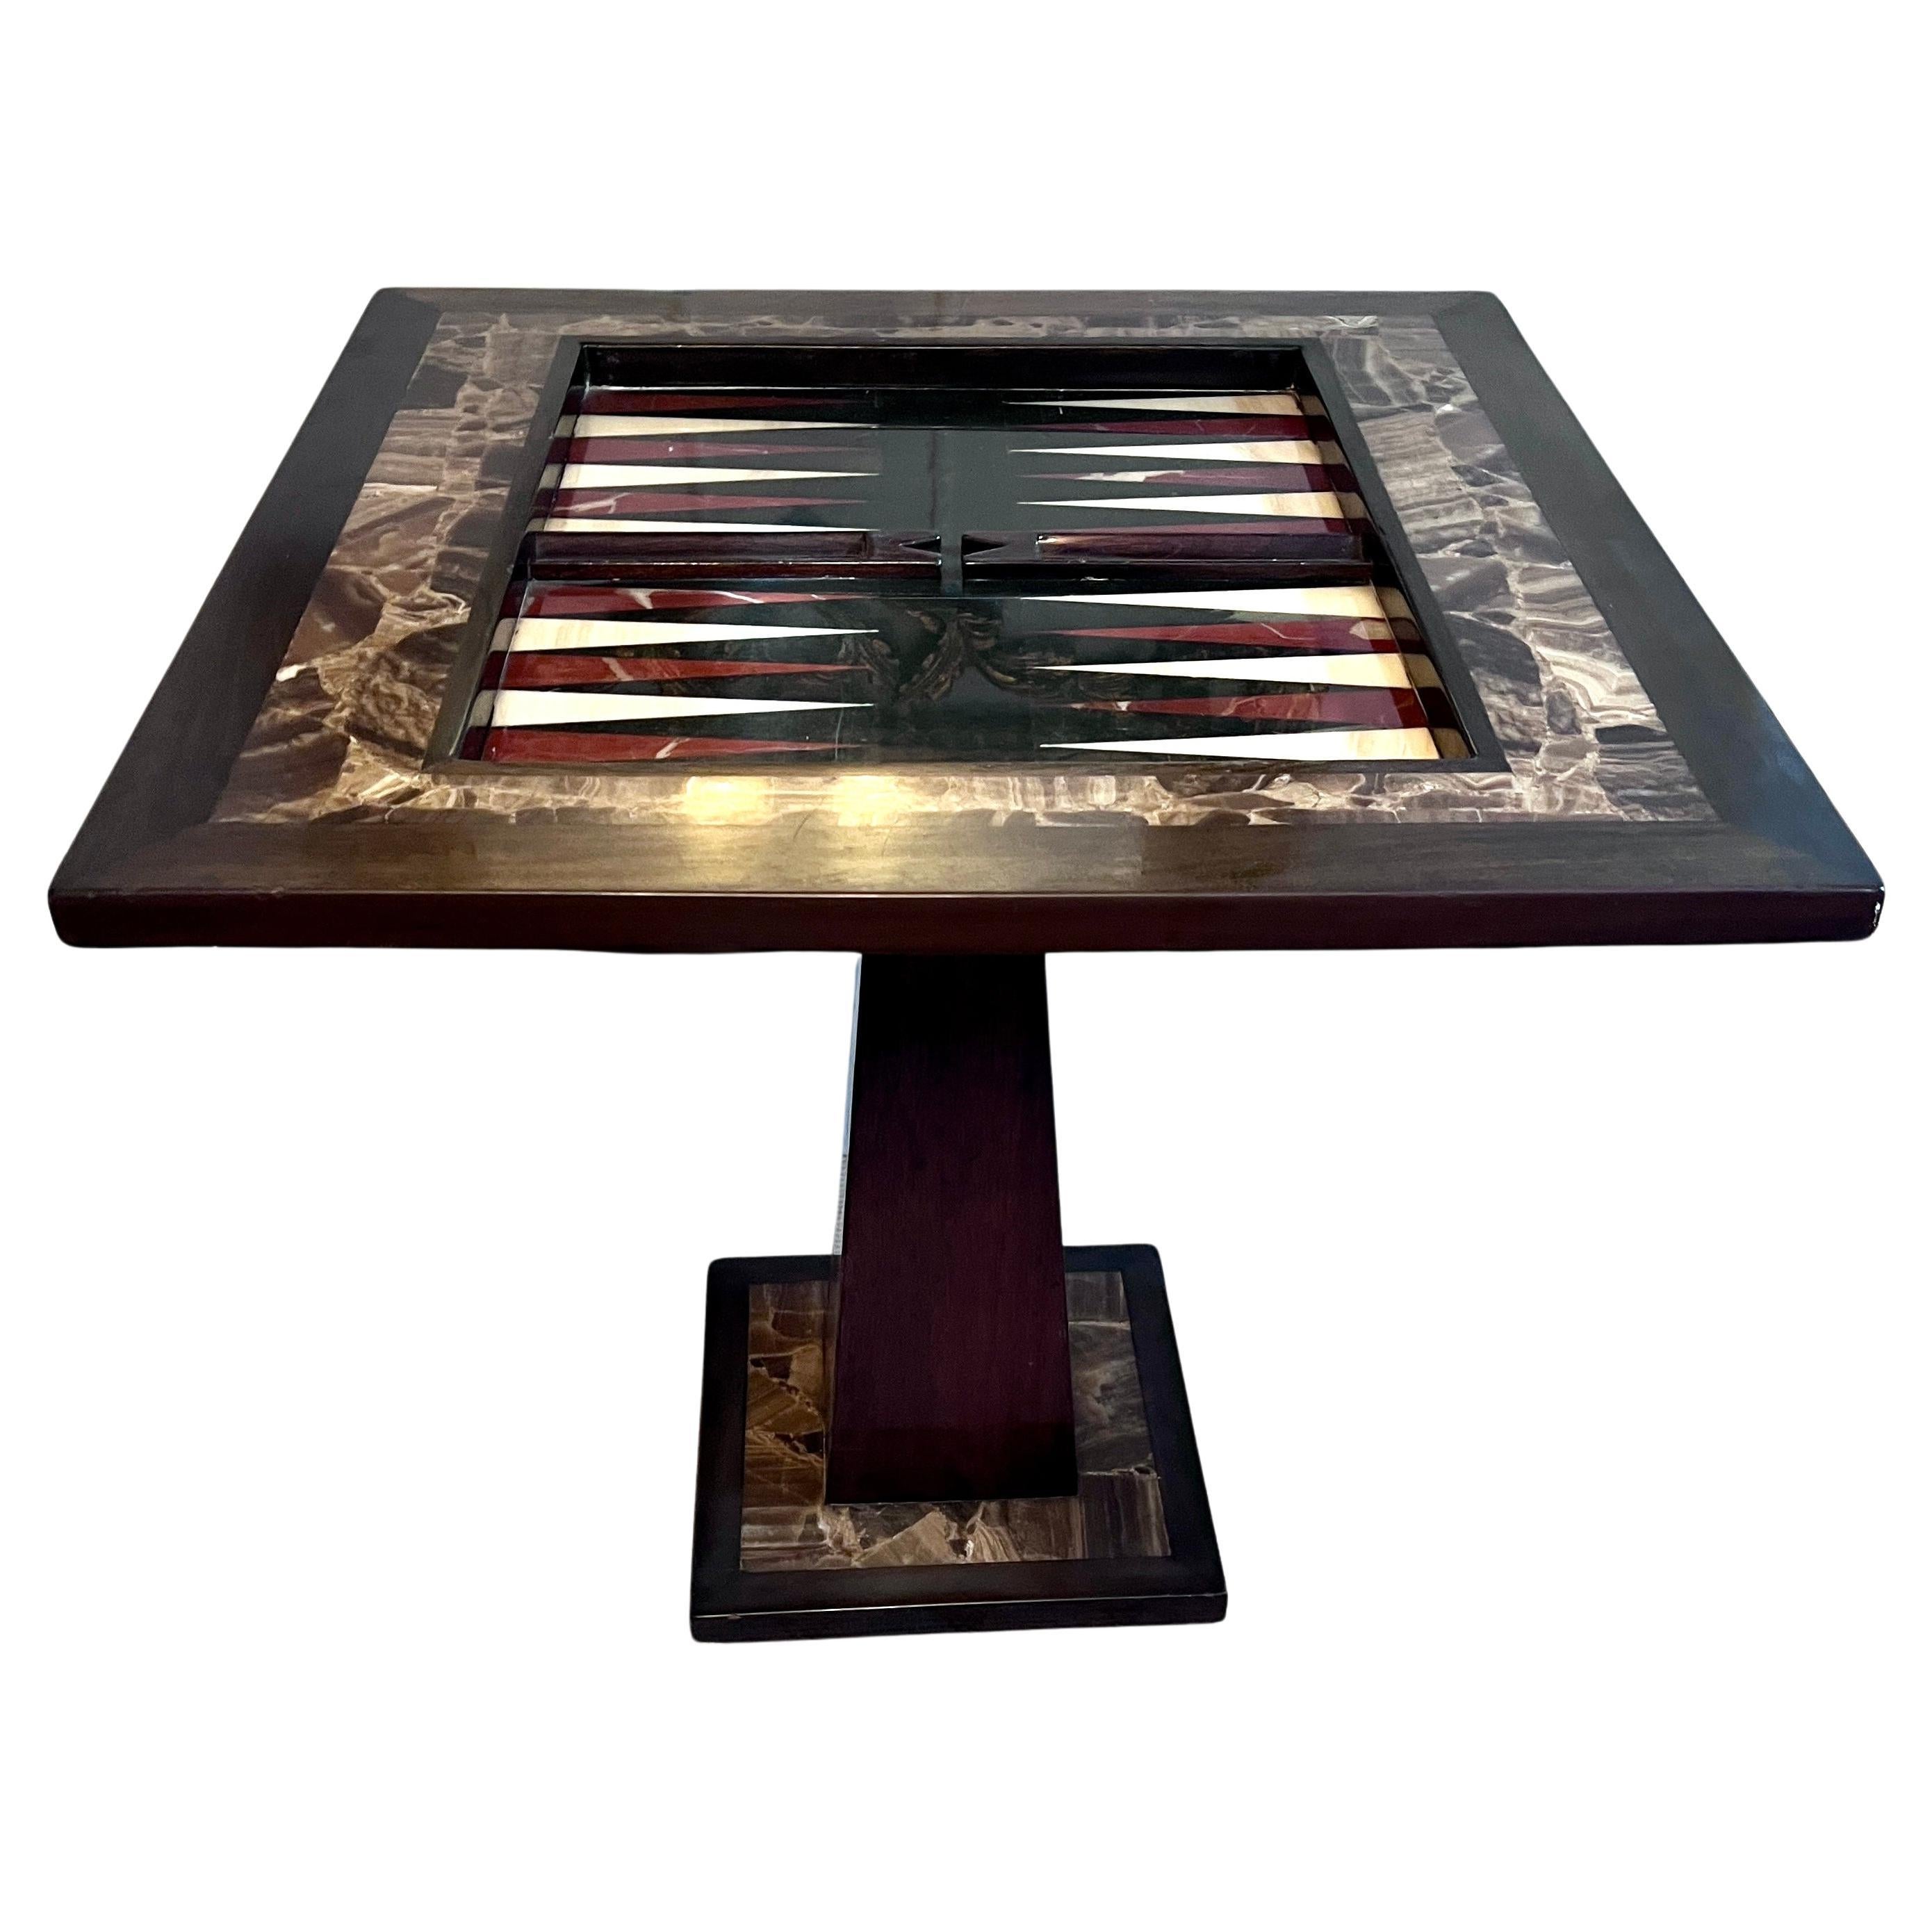 Table de jeu attribuée à Arturo Pani en noyer onyx avec échecs, dames et backgammon